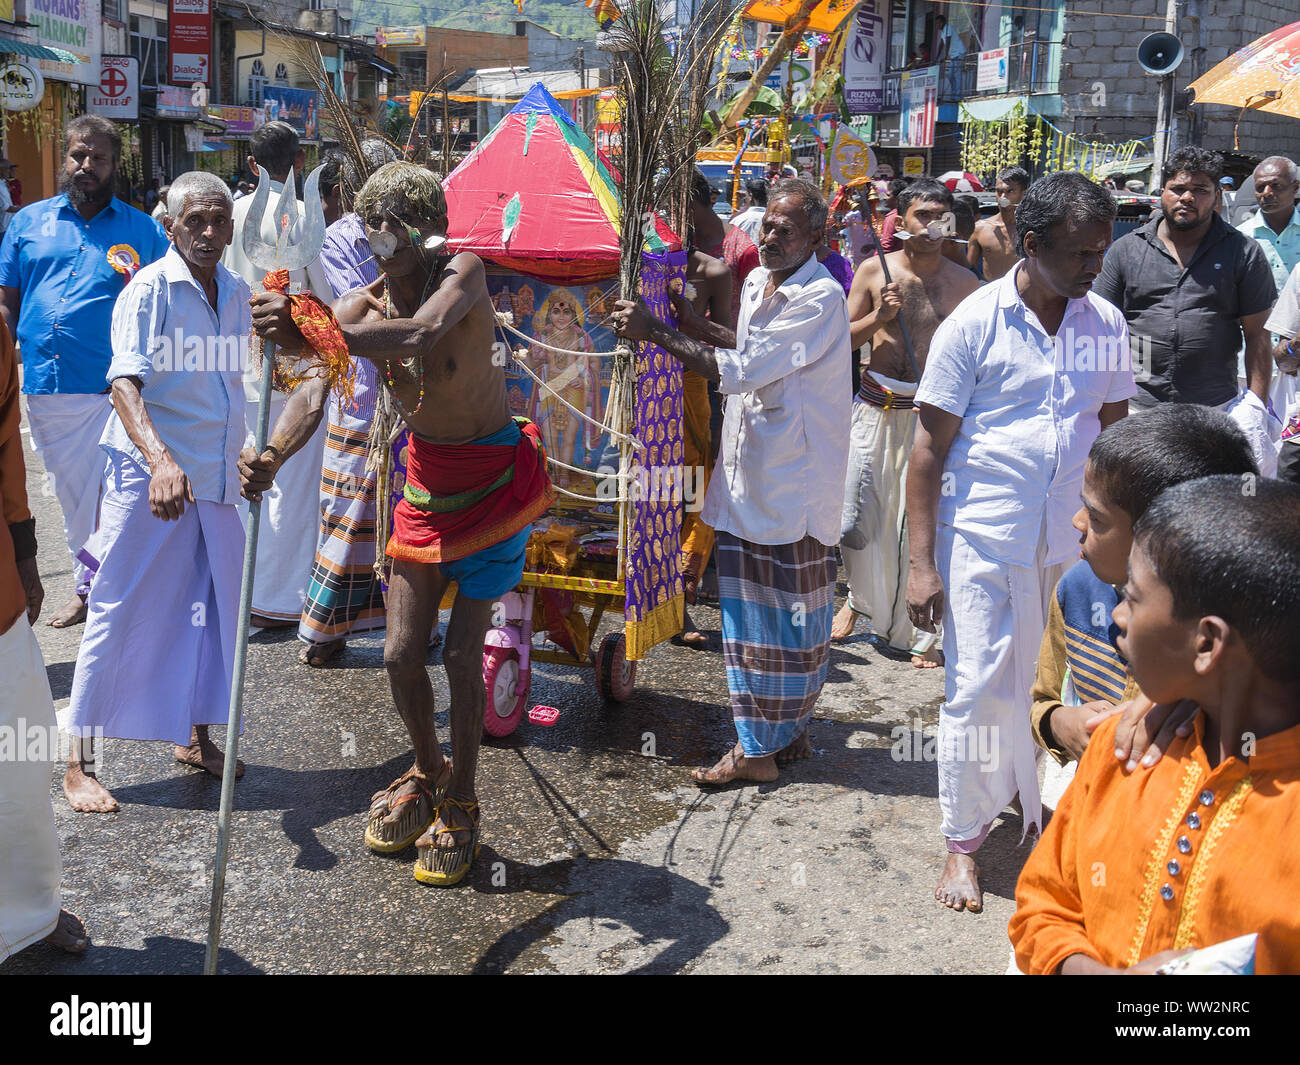 Pusellawa, Sri Lanka, 12. März 2019: Hindu Festival der Thaipusam - Body Piercing Rituale unter dem Blut Mond. Anhänger ziehen Warenkorb mit Haken in der Haut. Stockfoto